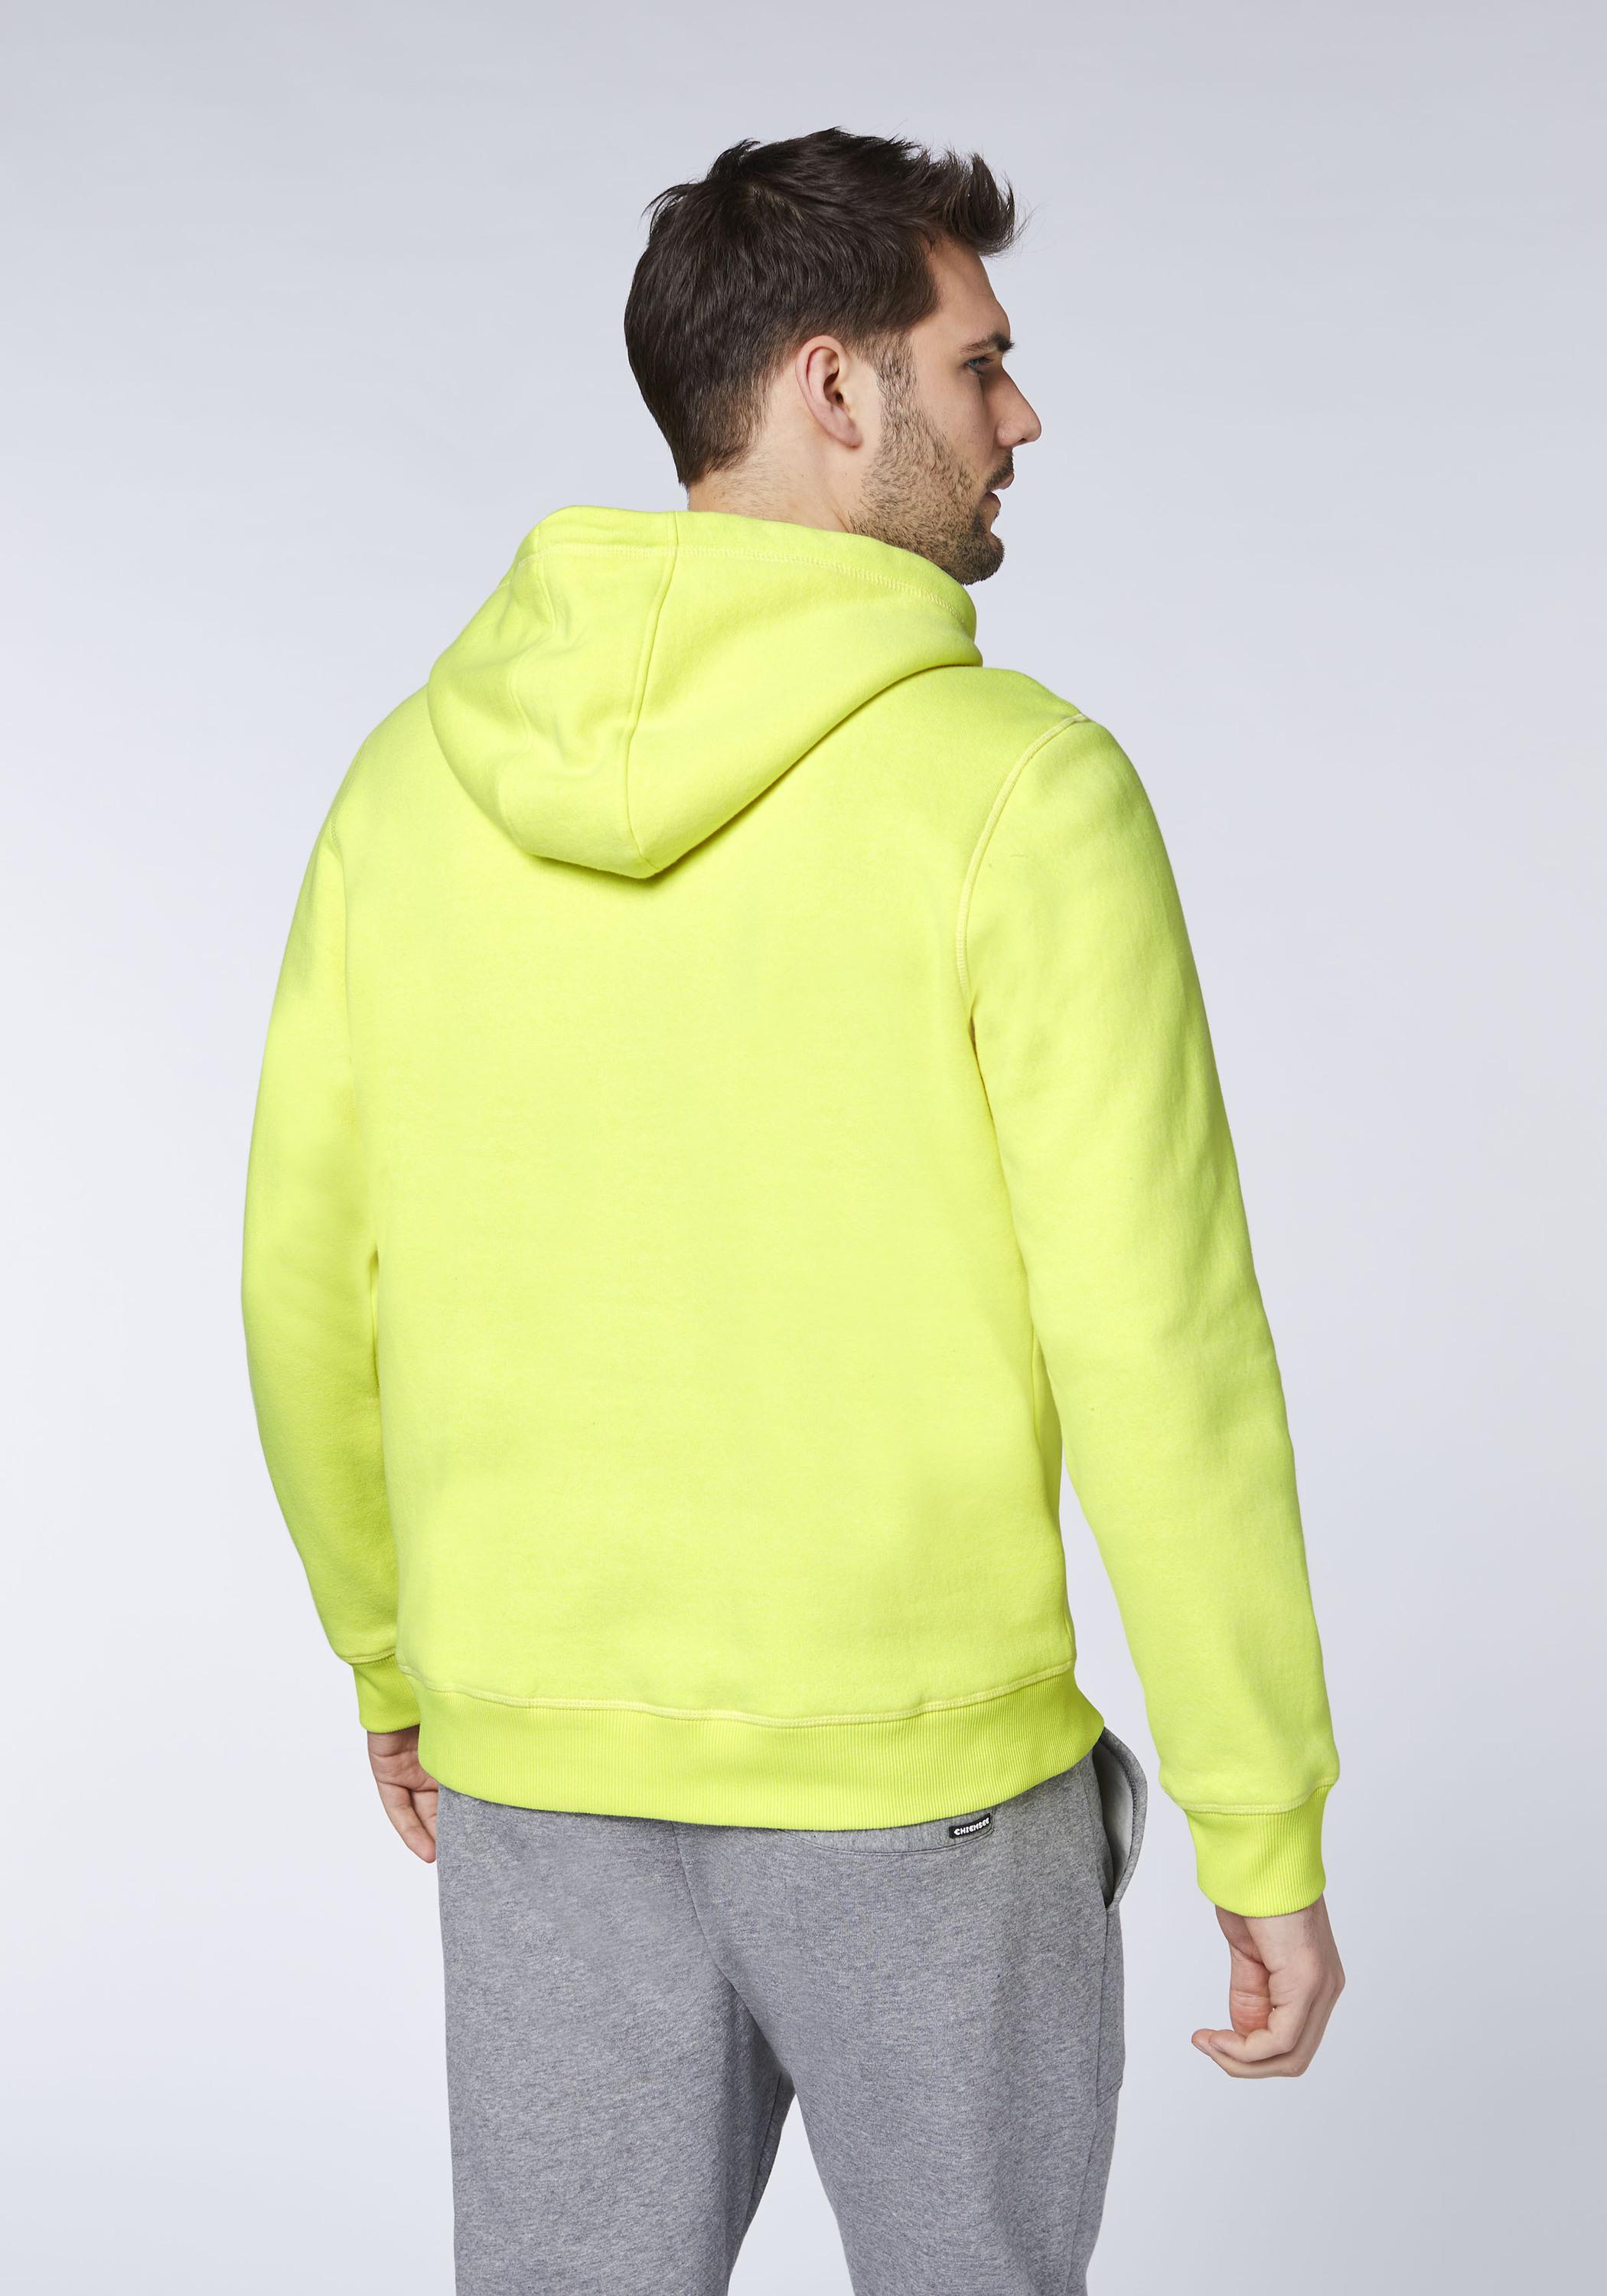 SportScheck Herren Sweatshirt kaufen Online Shop Kapuzensweatshirt von Safety Chiemsee Yellow im